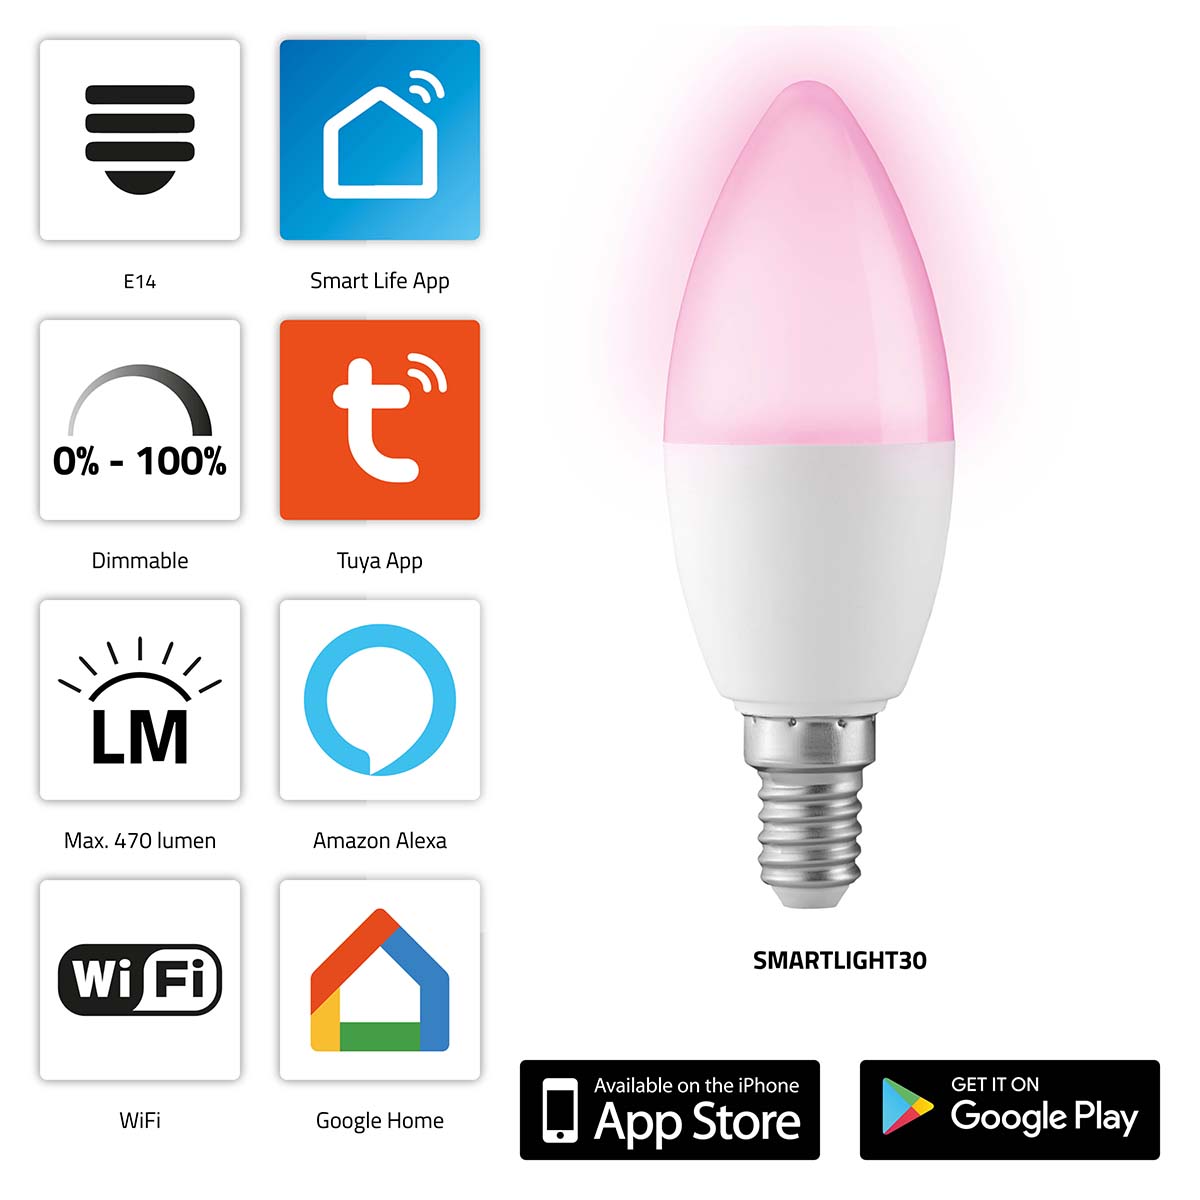 SMARTLIGHT30 Chytrá barevná LED lampa s Wi-Fi